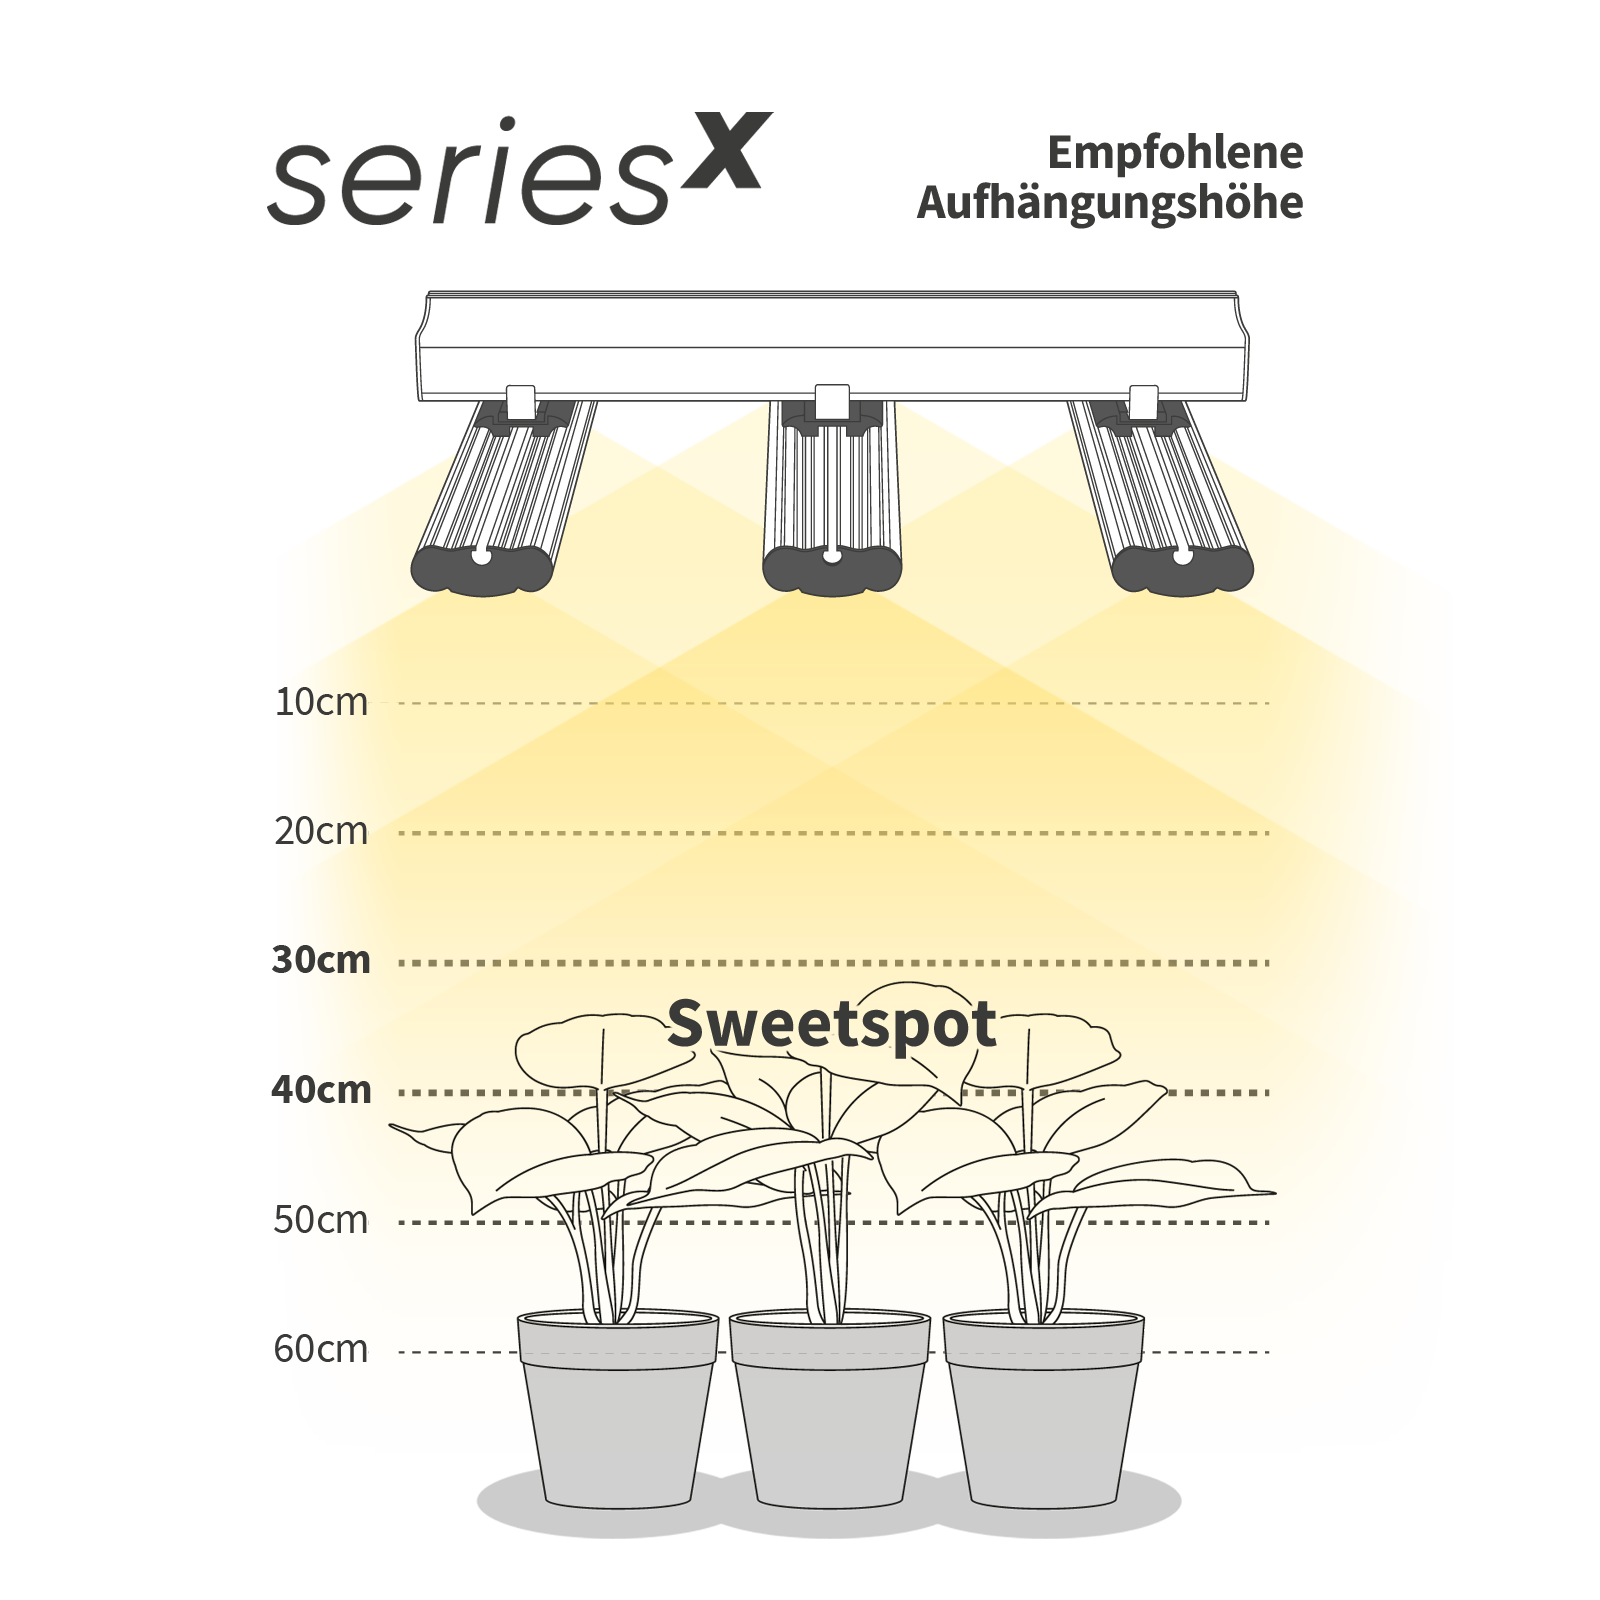 25 seriesX Empfohlene Aufhängungshöhe bzw. Sweetspot